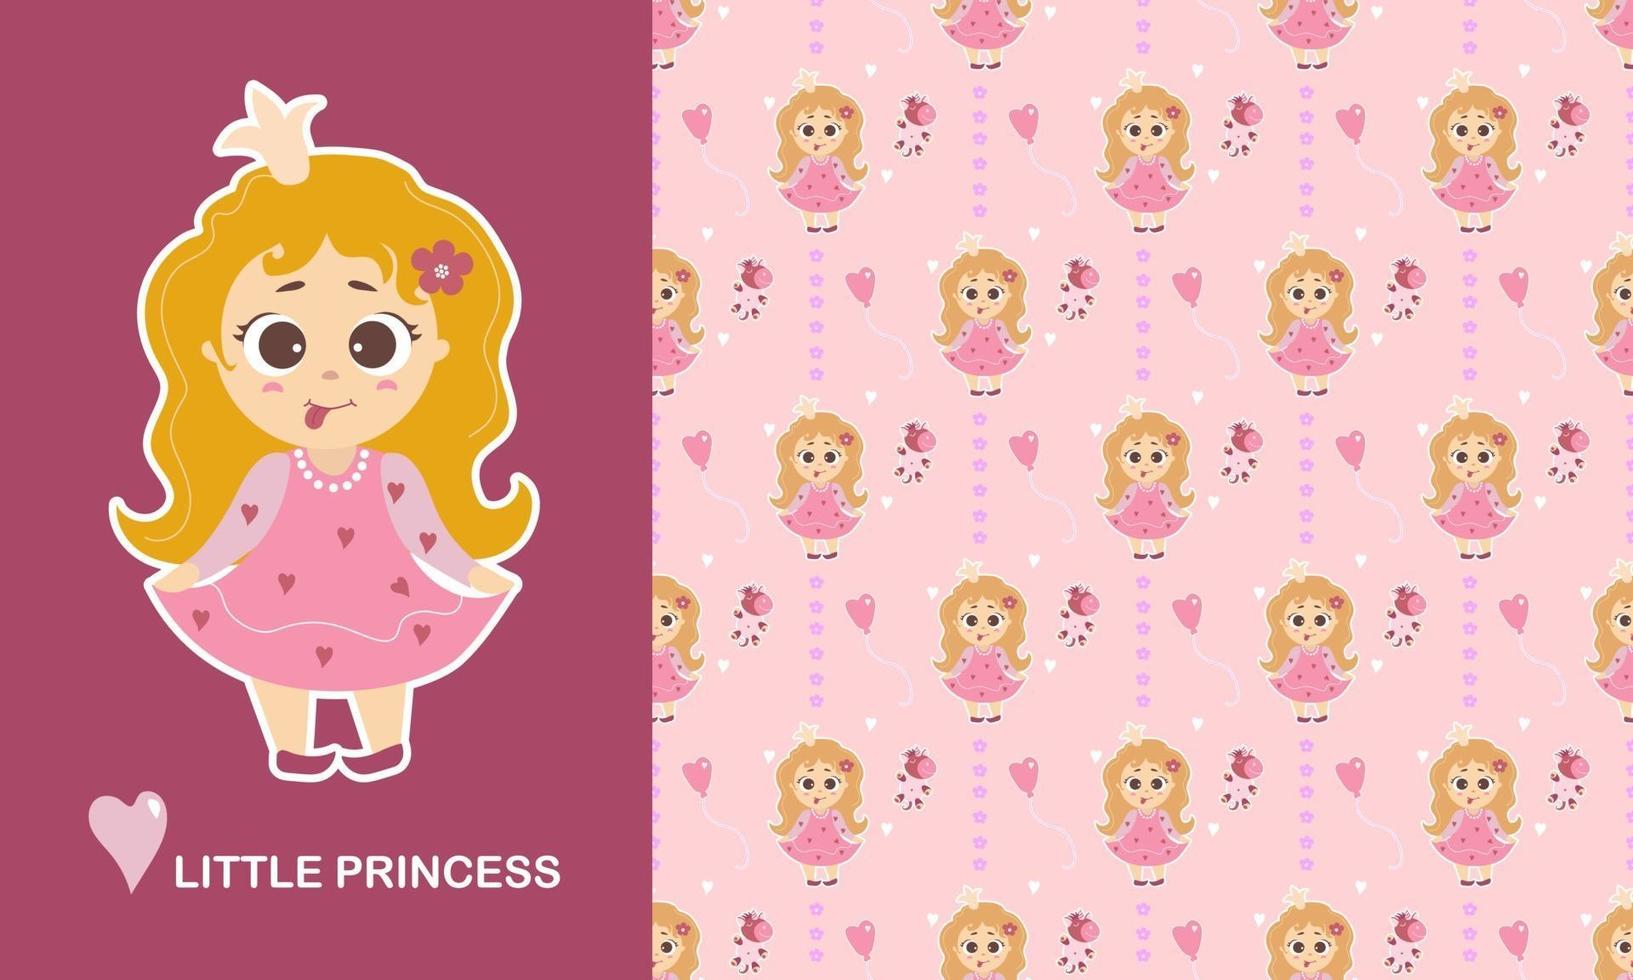 klein prinsessenkarakter en naadloos patroon. schattig meisje met haar tong opknoping en lang haar, eenhoorn speelgoed, bloemen en een hart op een roze achtergrond. vector. kindercollectie voor design, textiel vector